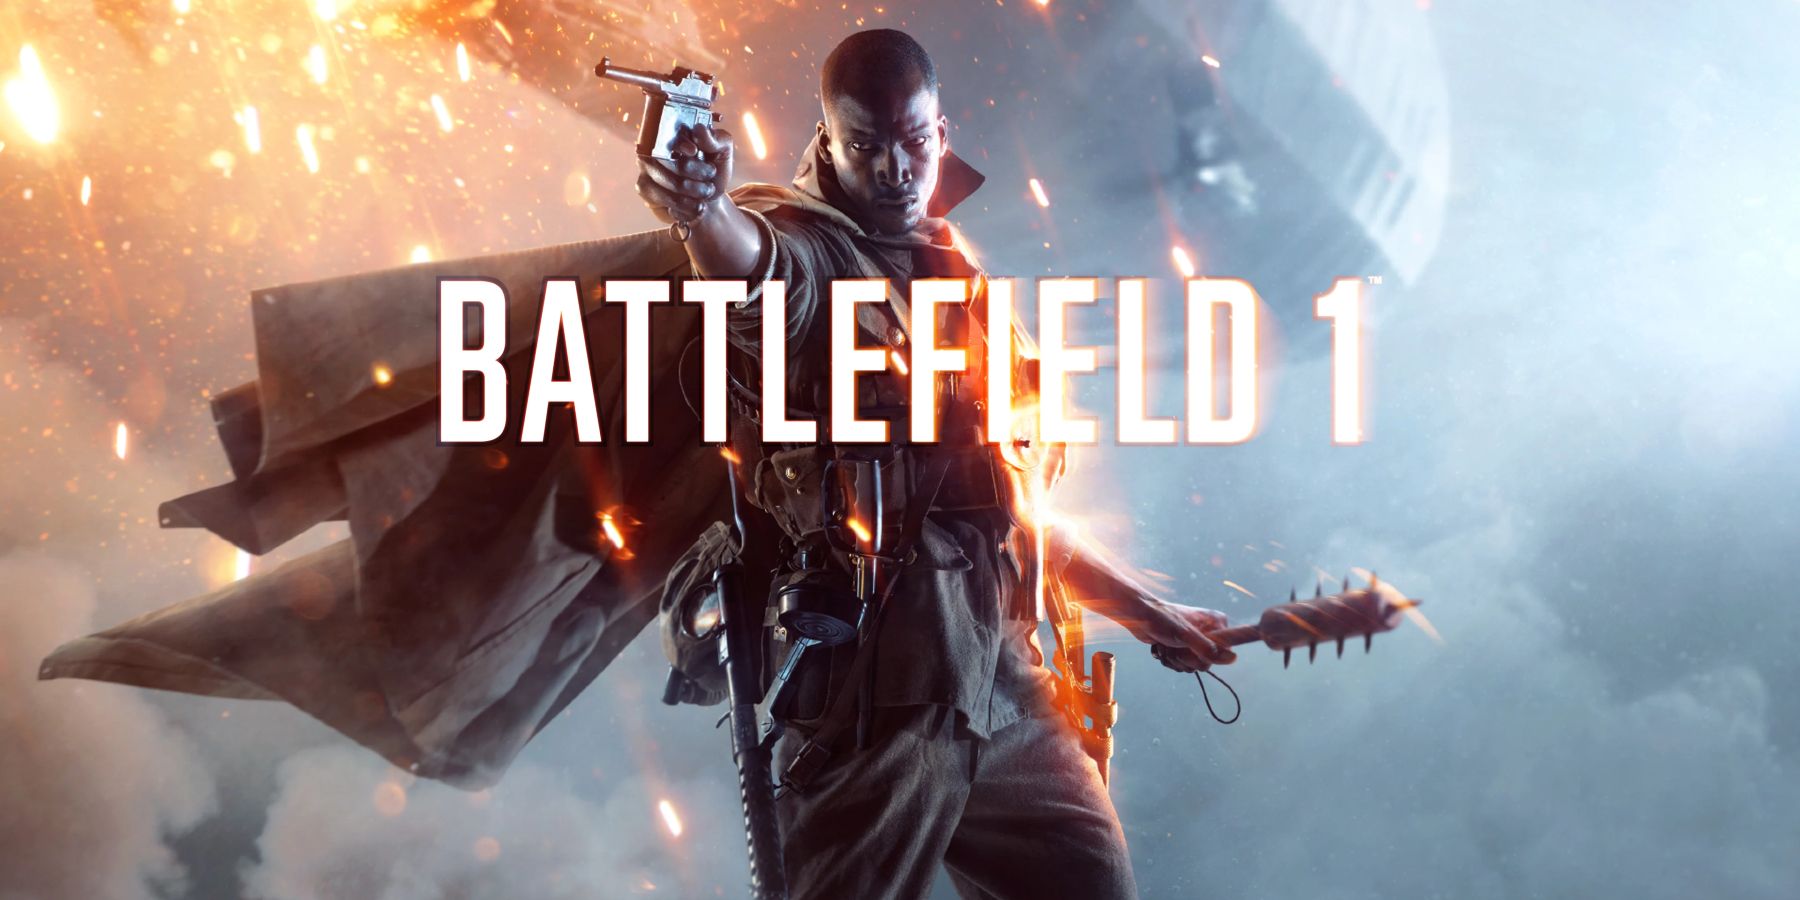 Das Wiederaufleben von Battlefield 1 zeigt, dass sich weitere Battlefield-Spiele zum Thema 1. Weltkrieg lohnen könnten